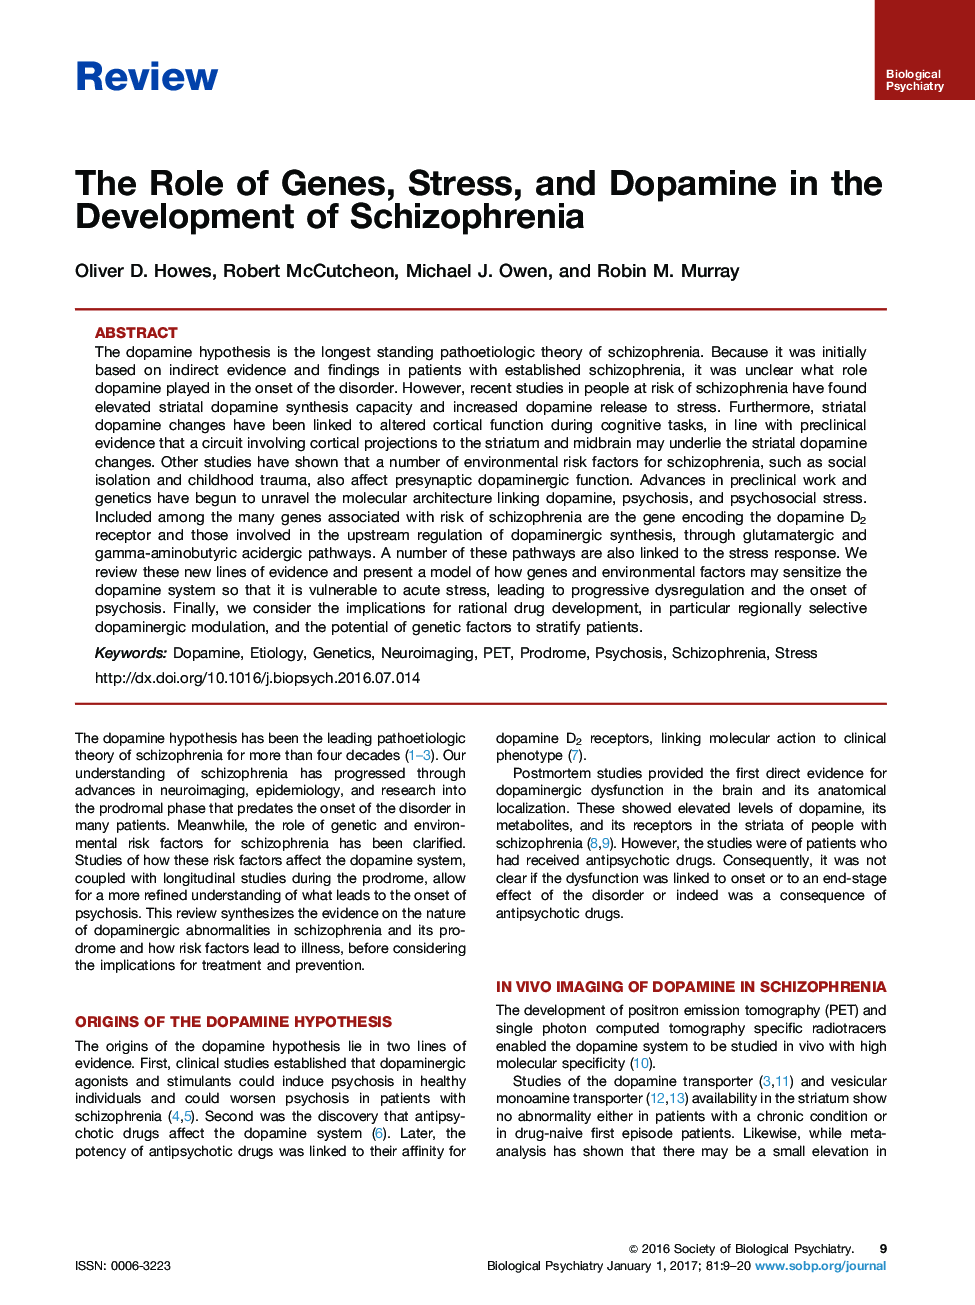 بررسی نقش ژن ها، استرس و دوپامین در توسعه اسکیزوفرنیا 